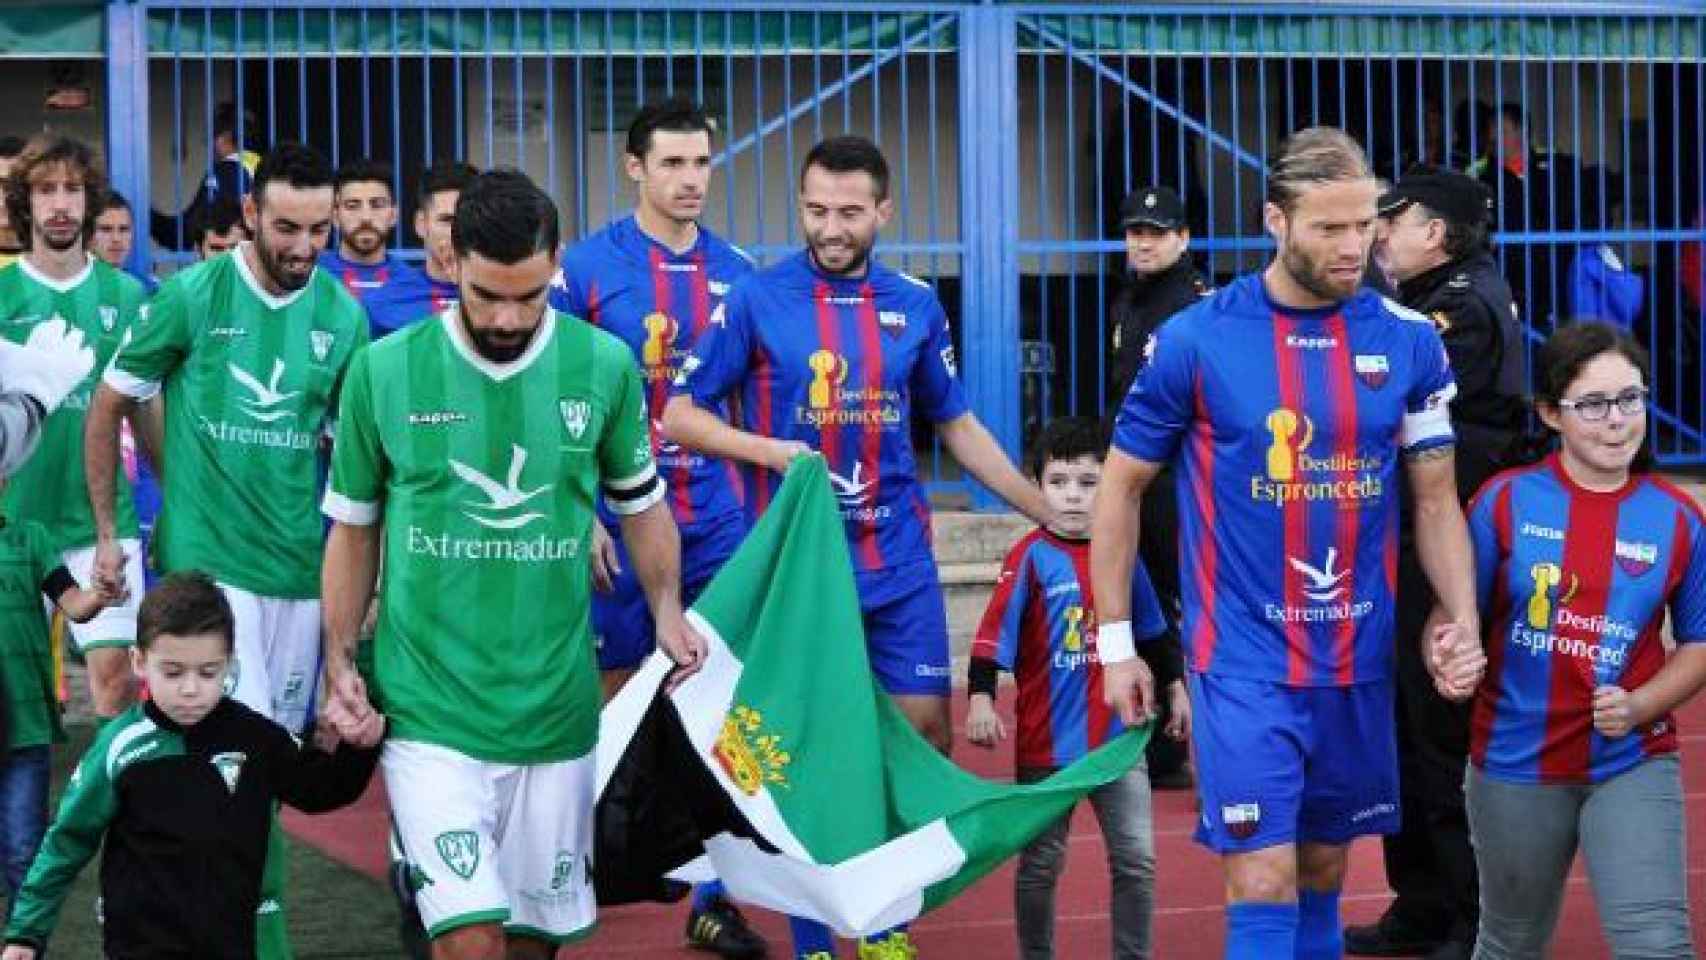 Jugadores del Villanovense y Extremadura portando la bandera extremeña.